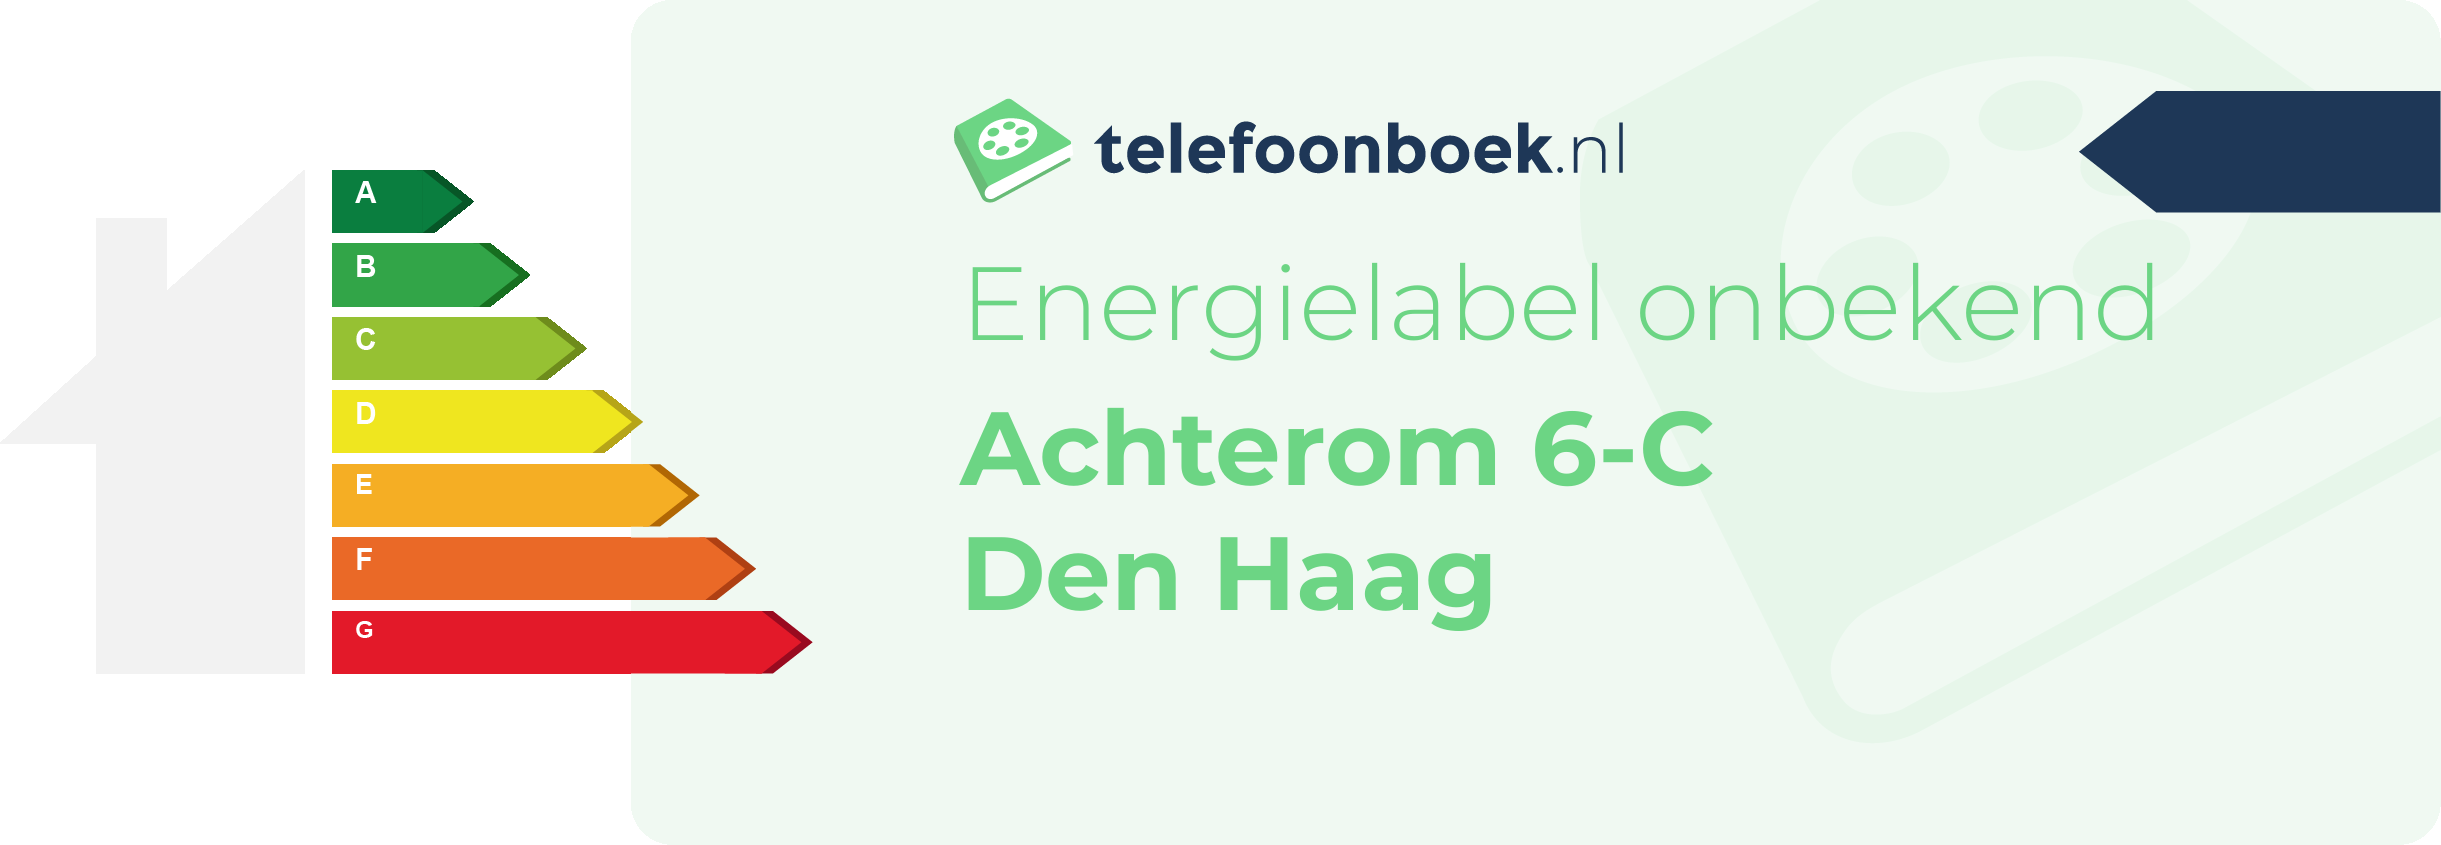 Energielabel Achterom 6-C Den Haag